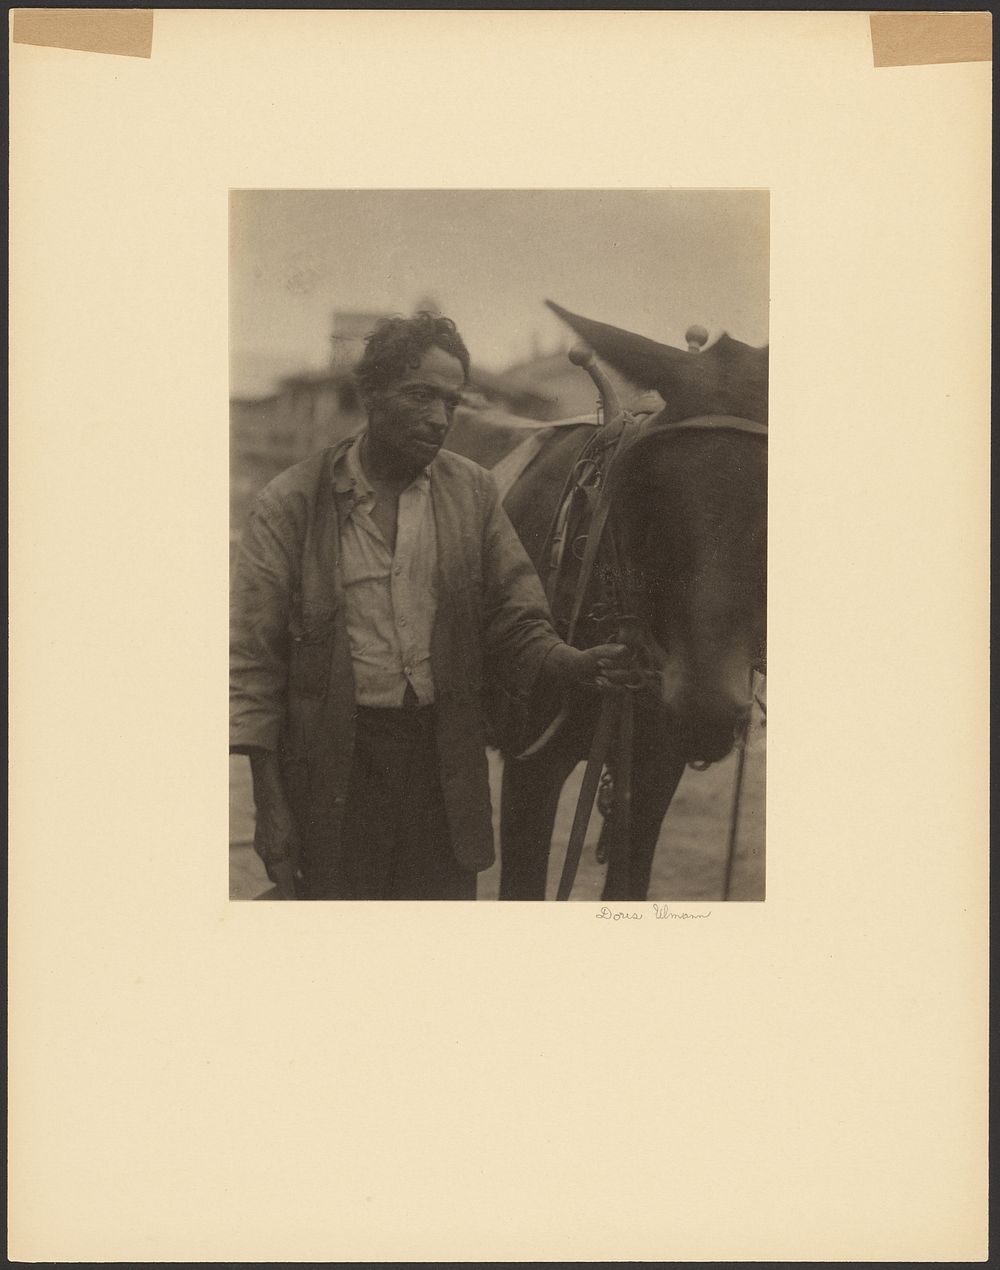 Man Leading a Mule by Doris Ulmann